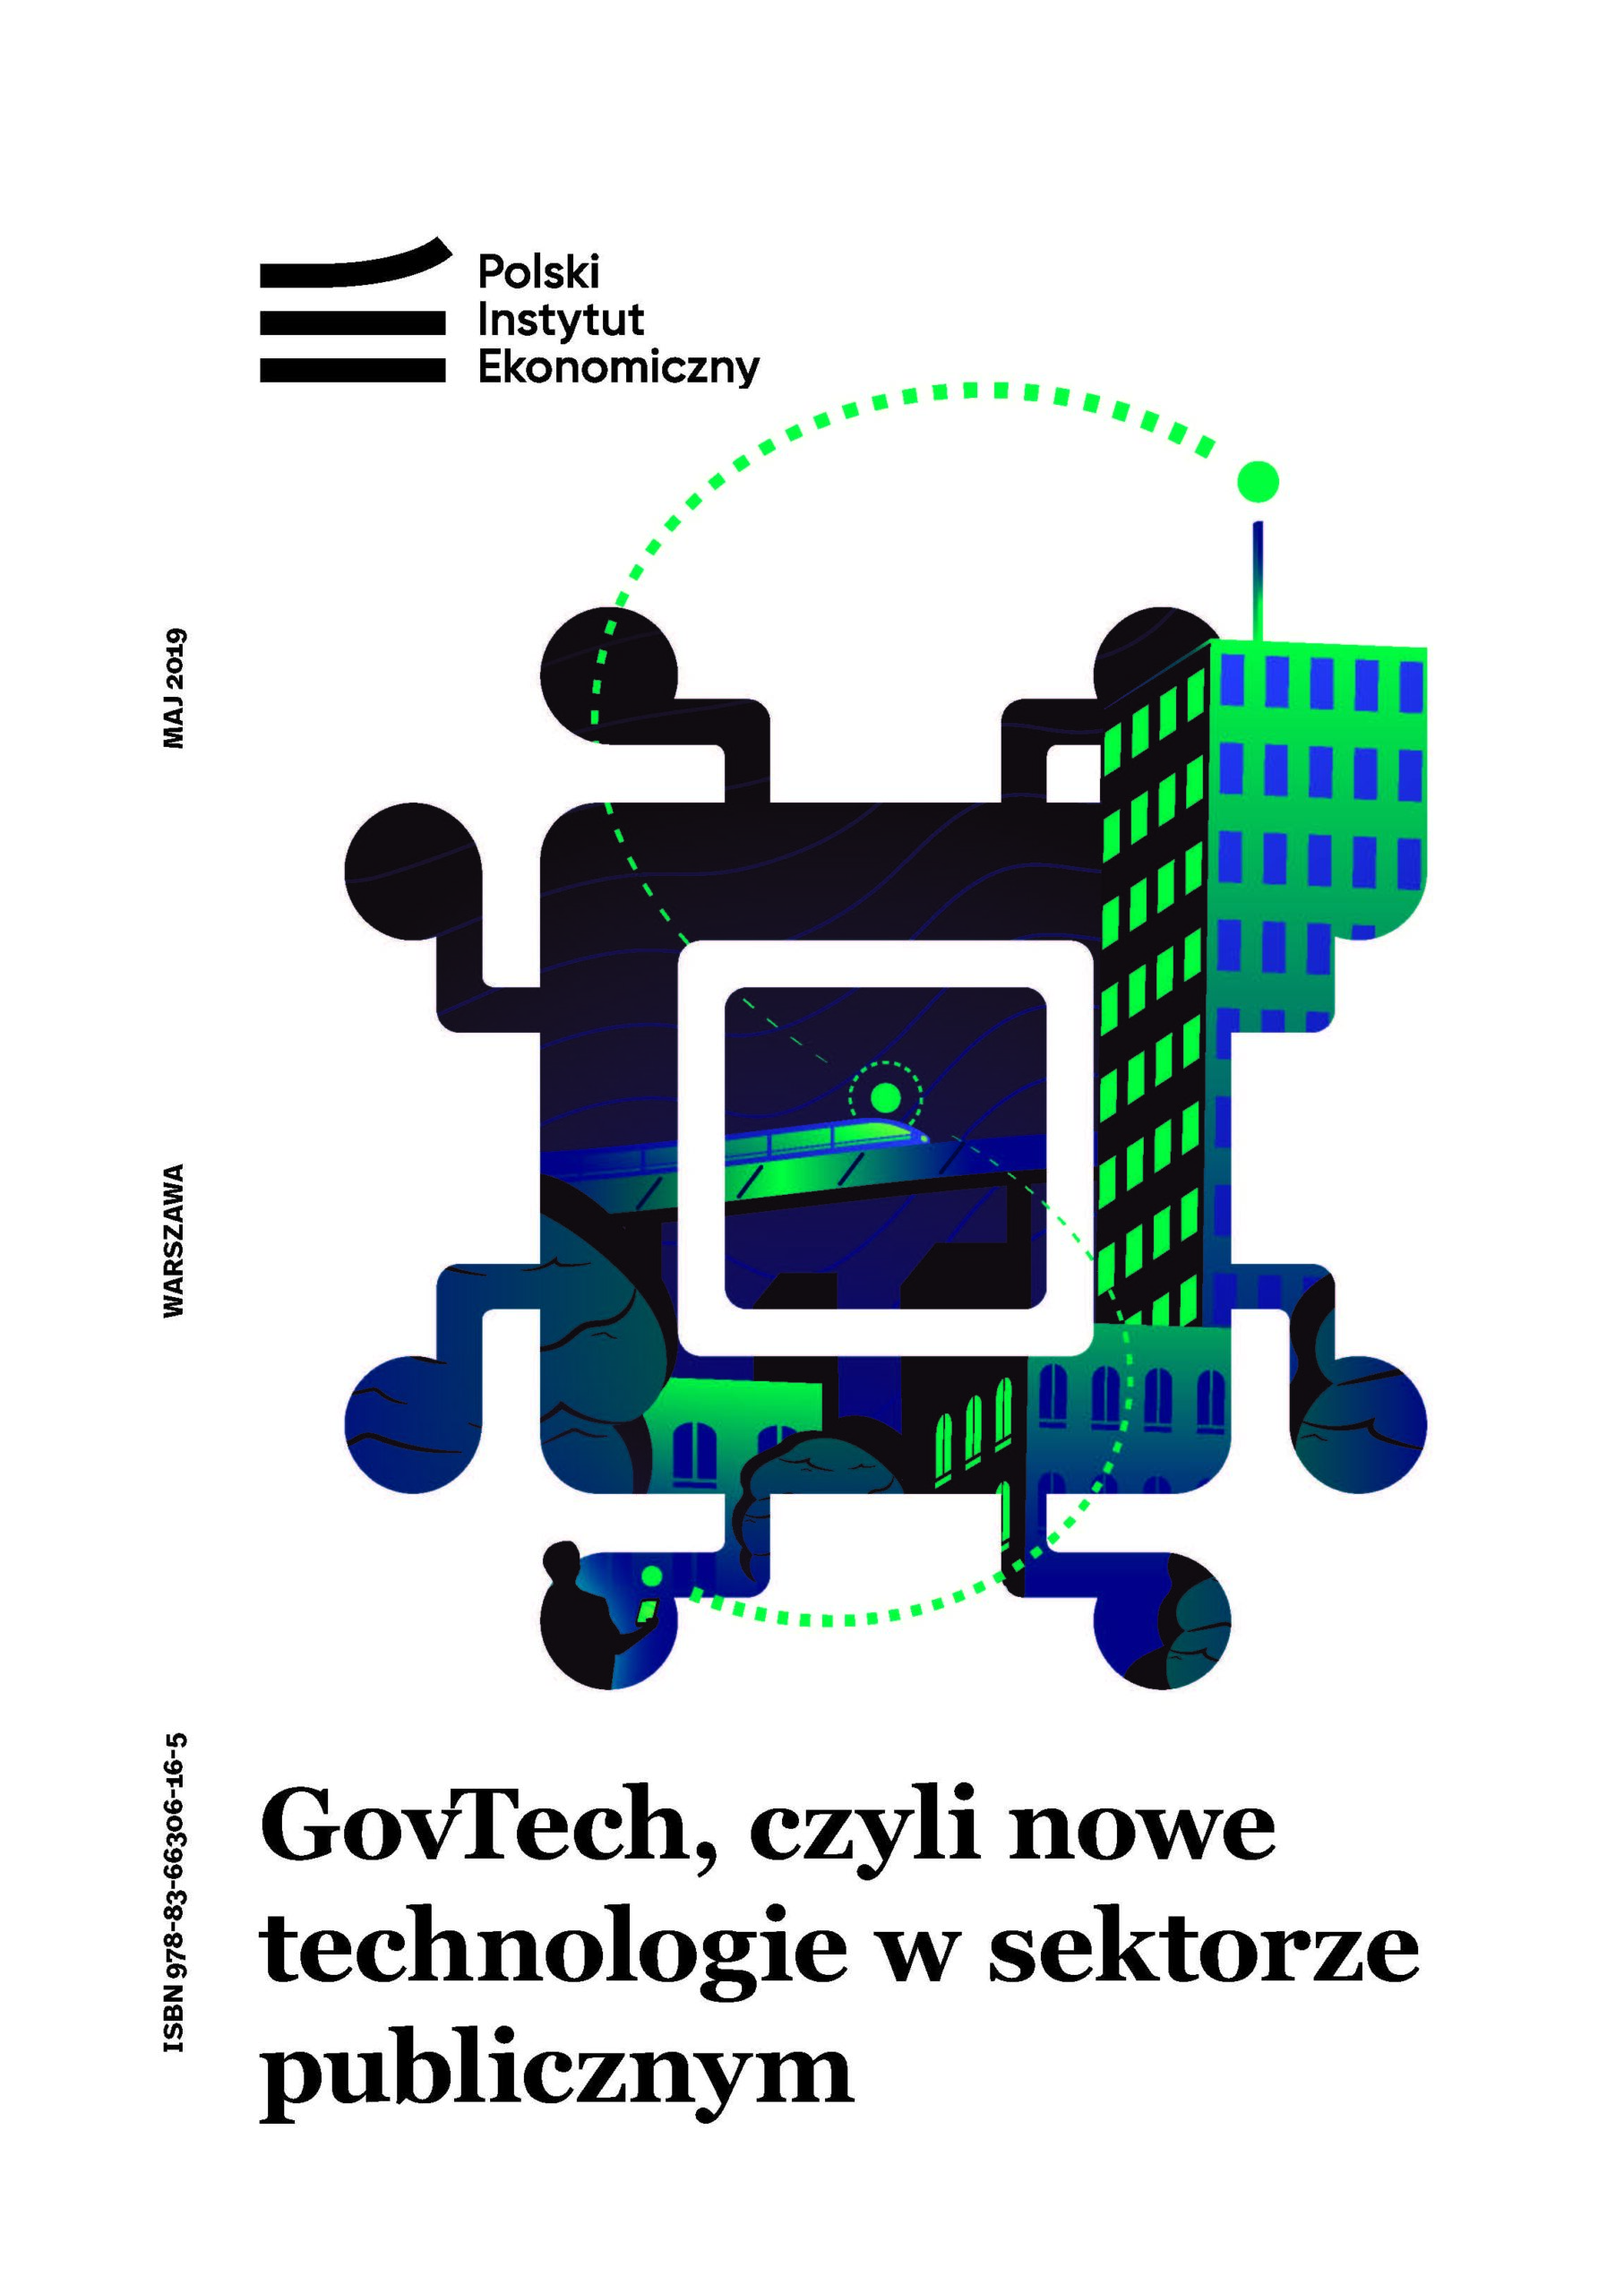 GovTech, czyli nowe technologie w sektorze publicznym